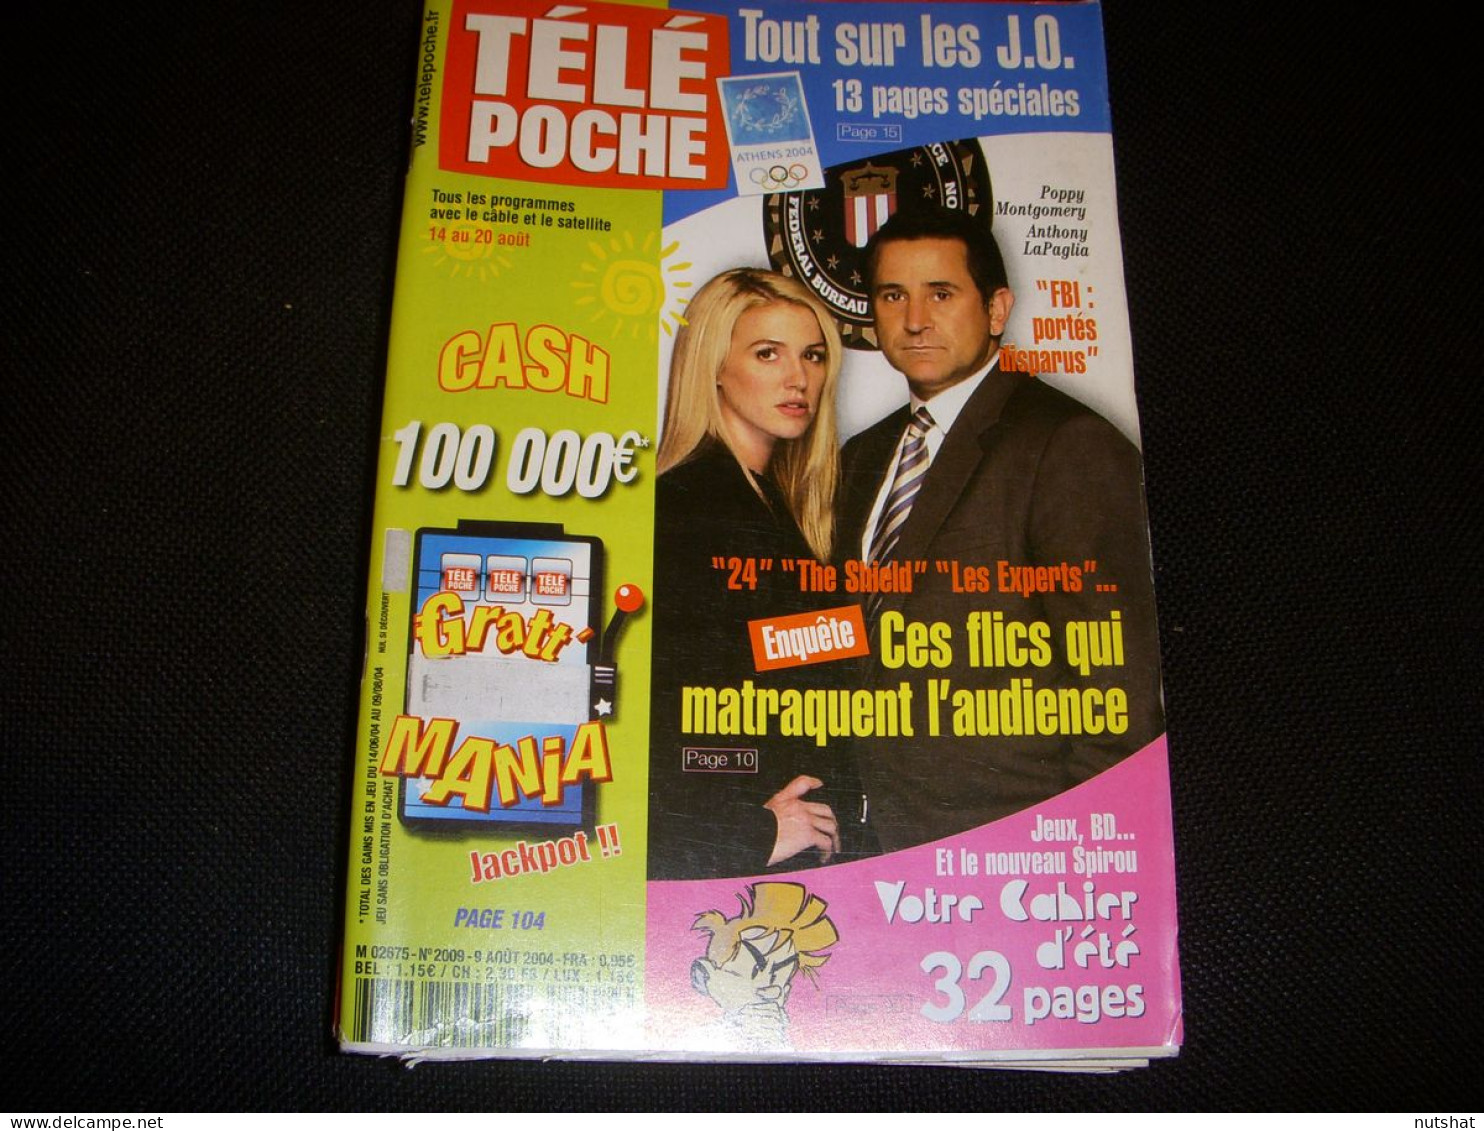 TELE POCHE 2009 09.08.2004 FBI LAPAGLIA ST EXUPERY JEROME ATTAL CECILE De FRANCE - Televisione